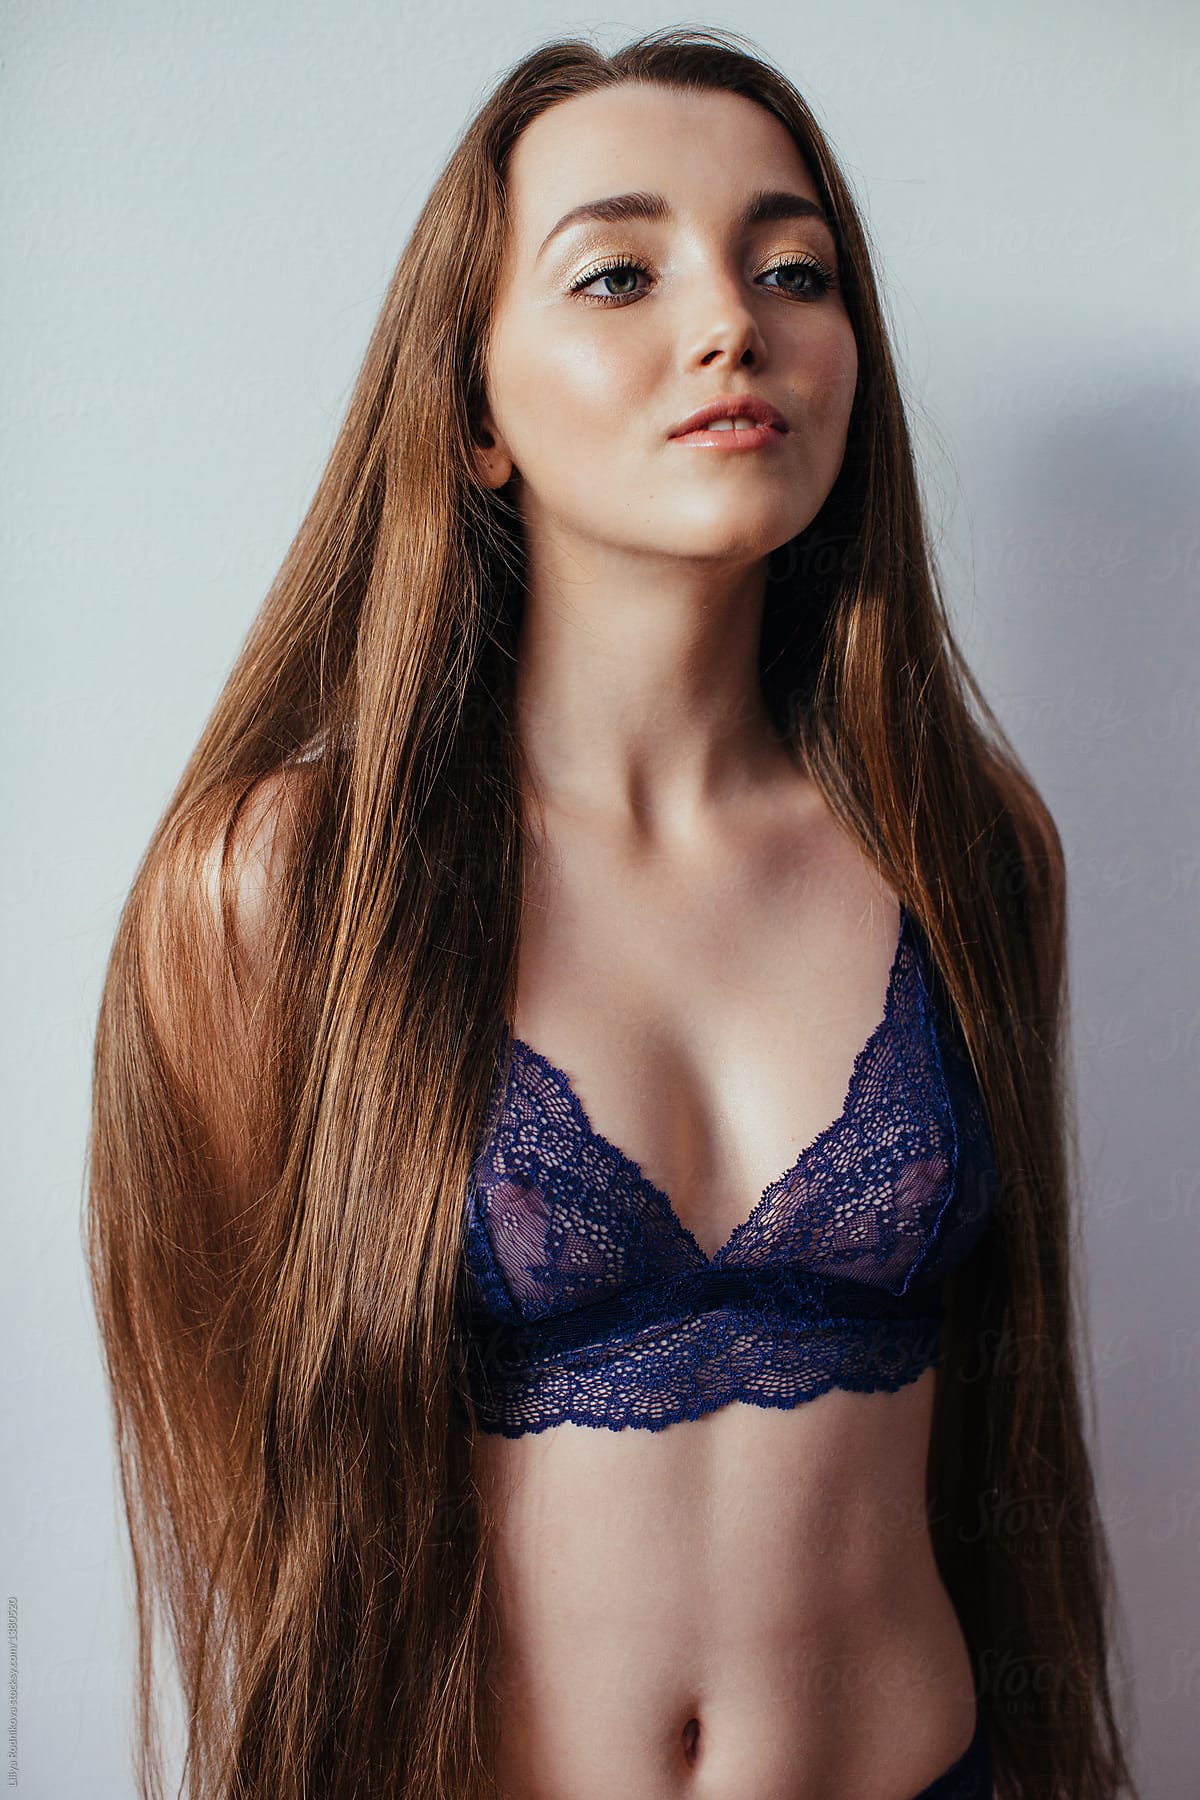 Girl long hair wearing bra stock image. Image of long - 195822603